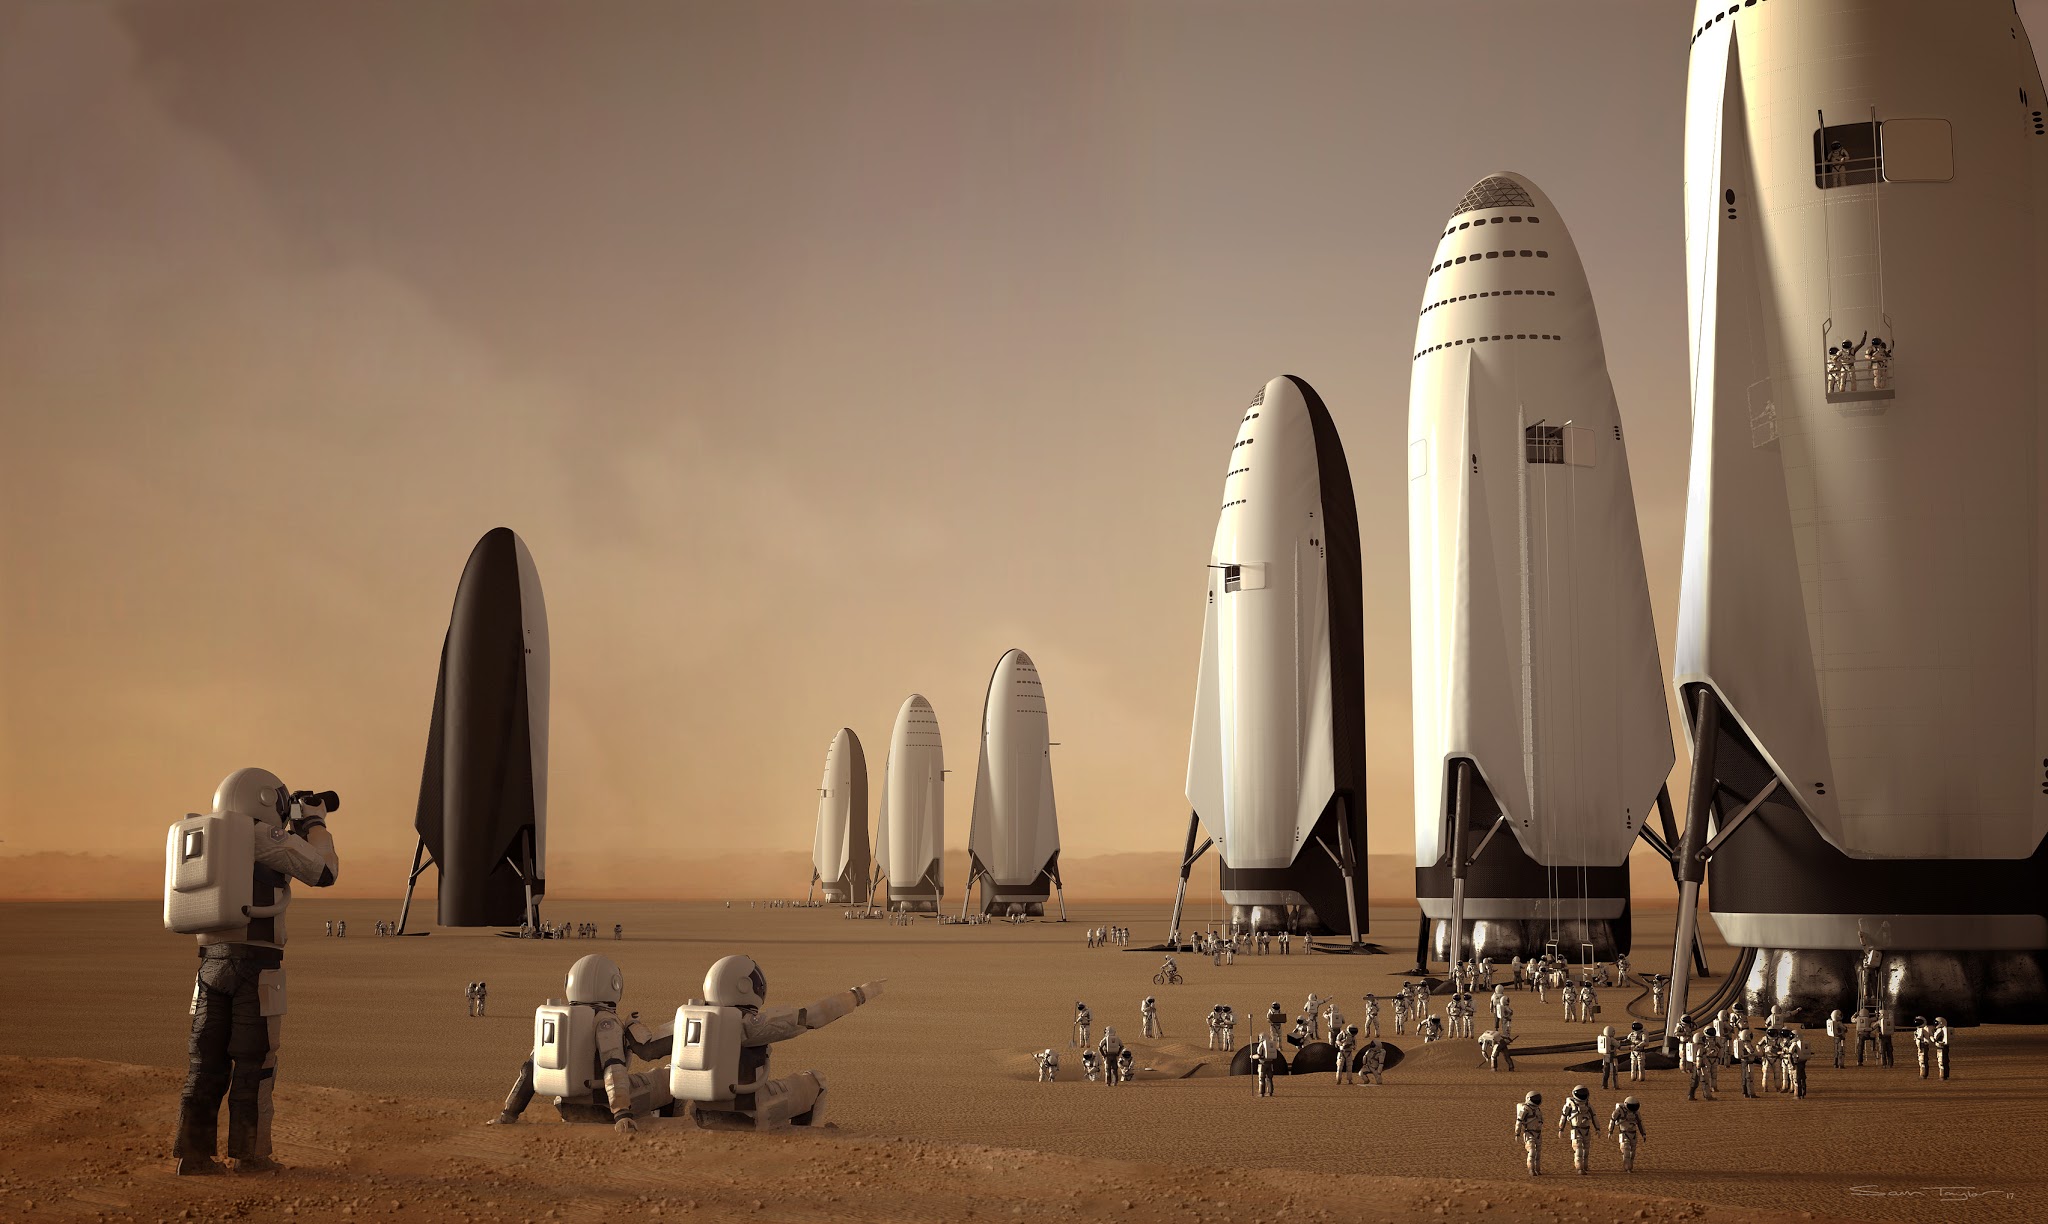 Fleet+of+SpaceX+ITS+spaceships+on+Mars+b